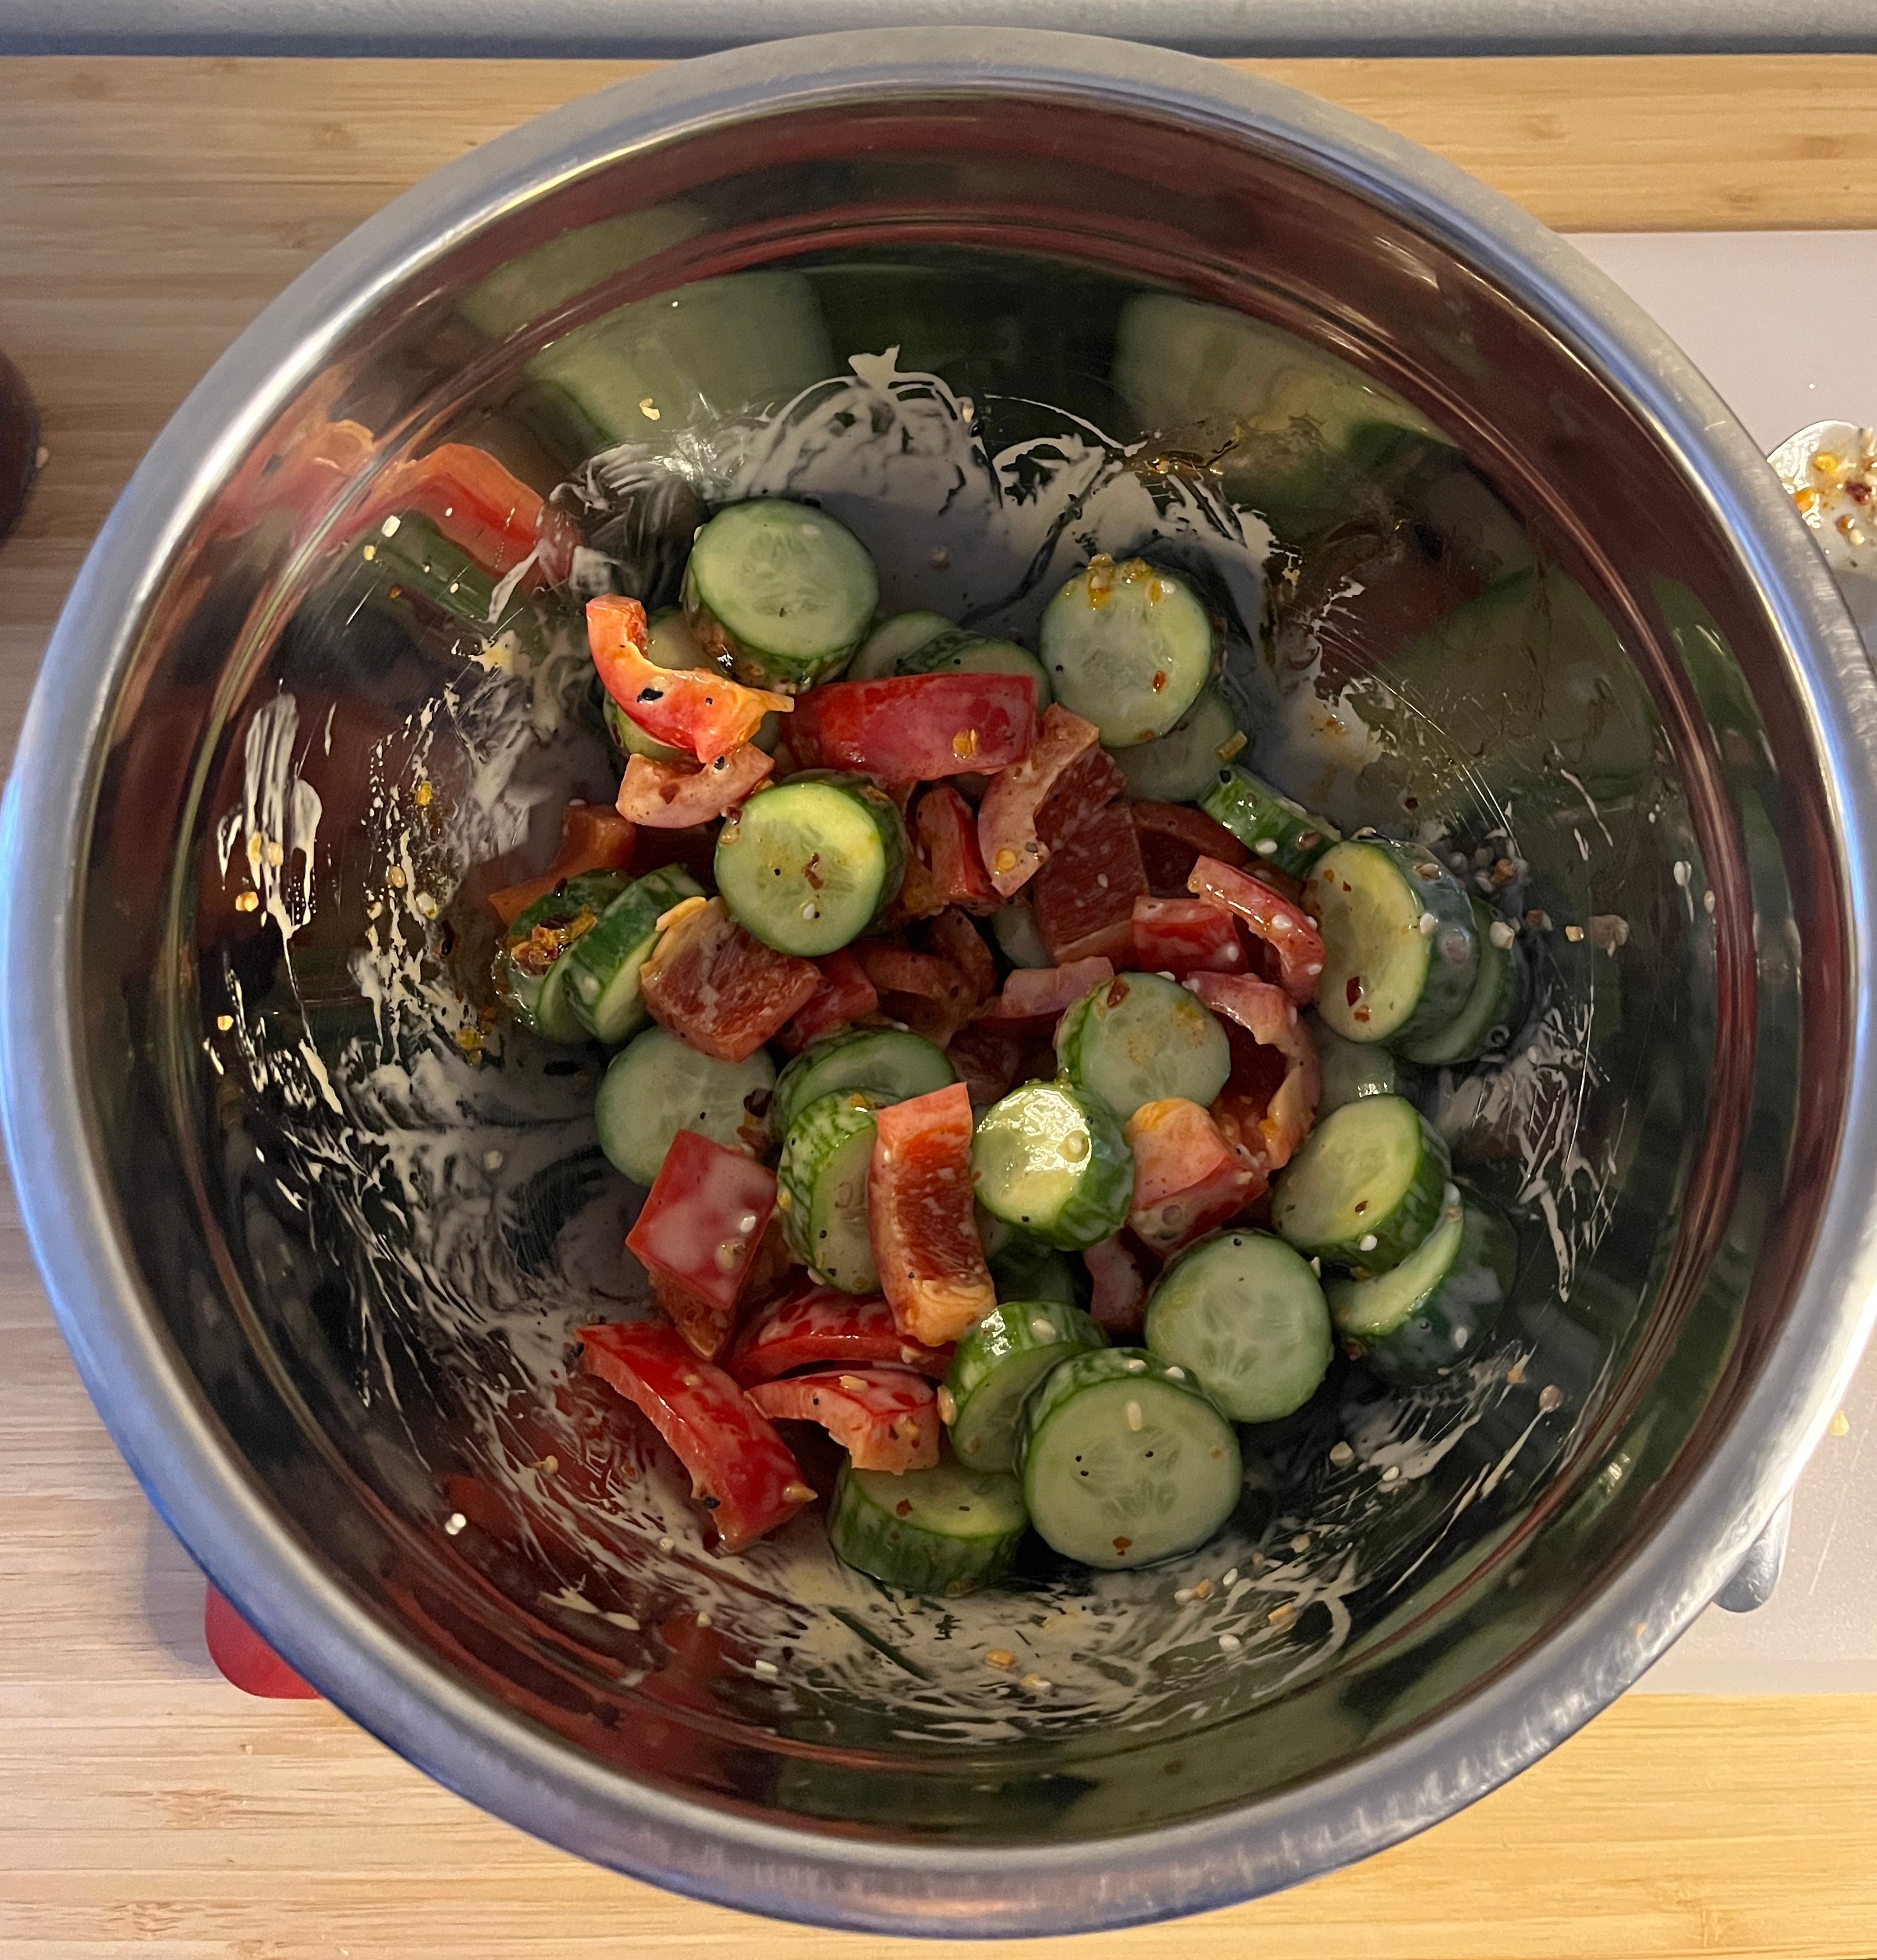 Ich begann mit der Zubereitung des viralen Salats aus Gurke und roter Paprika von TikTok und liebte den würzigen Crunch